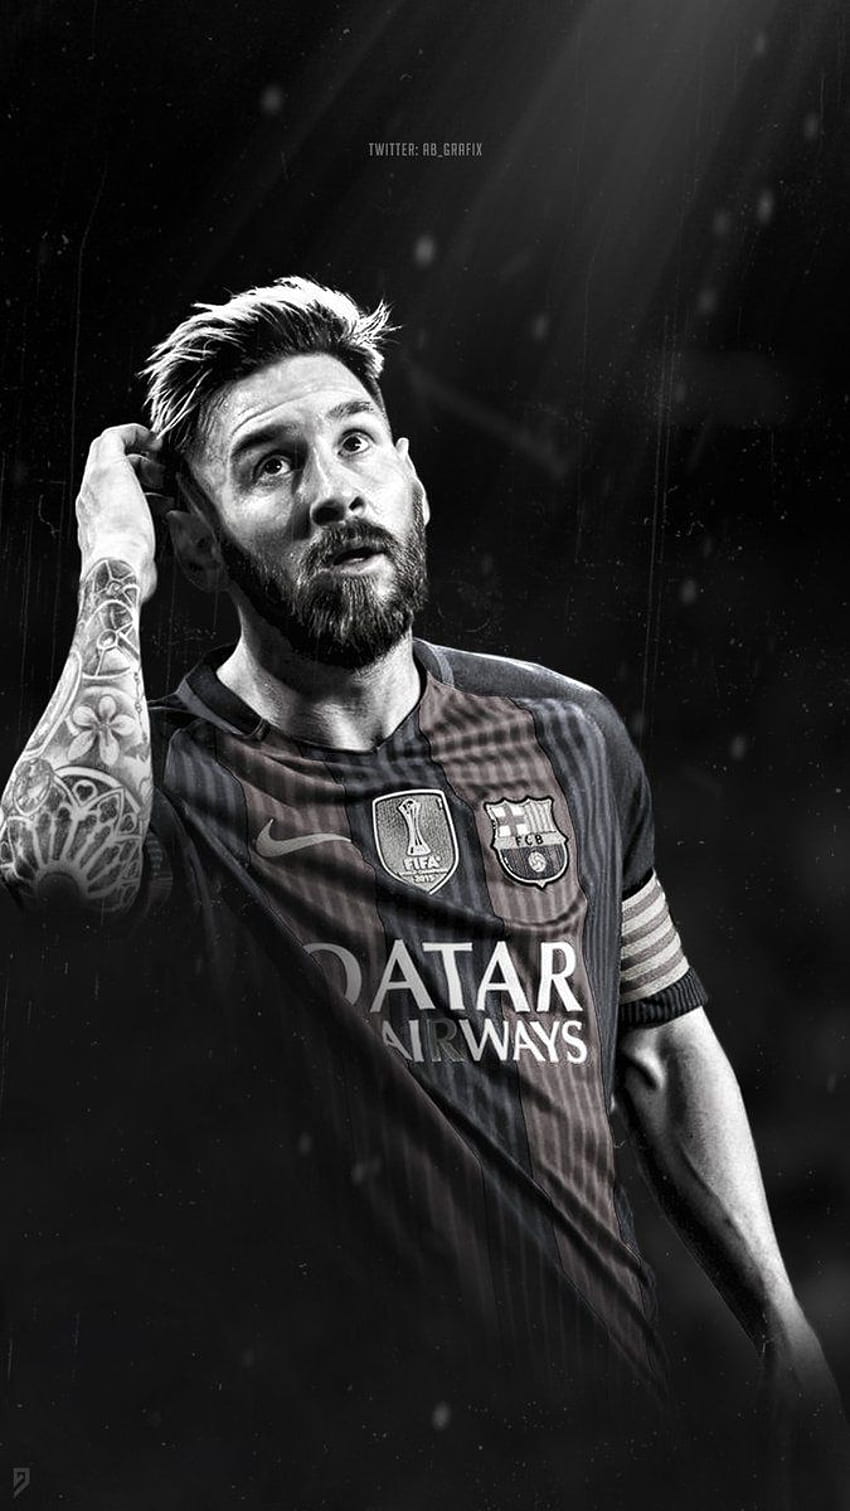 Hình nền điện thoại đen trắng với hình ảnh Messi là sự kết hợp hoàn hảo giữa sự đơn giản và tinh tế. Hình ảnh cầu thủ tài năng này được nhấn mạnh bởi màu sắc đen trắng tạo nên sự khác biệt và sự tập trung của tác phẩm nghệ thuật này.